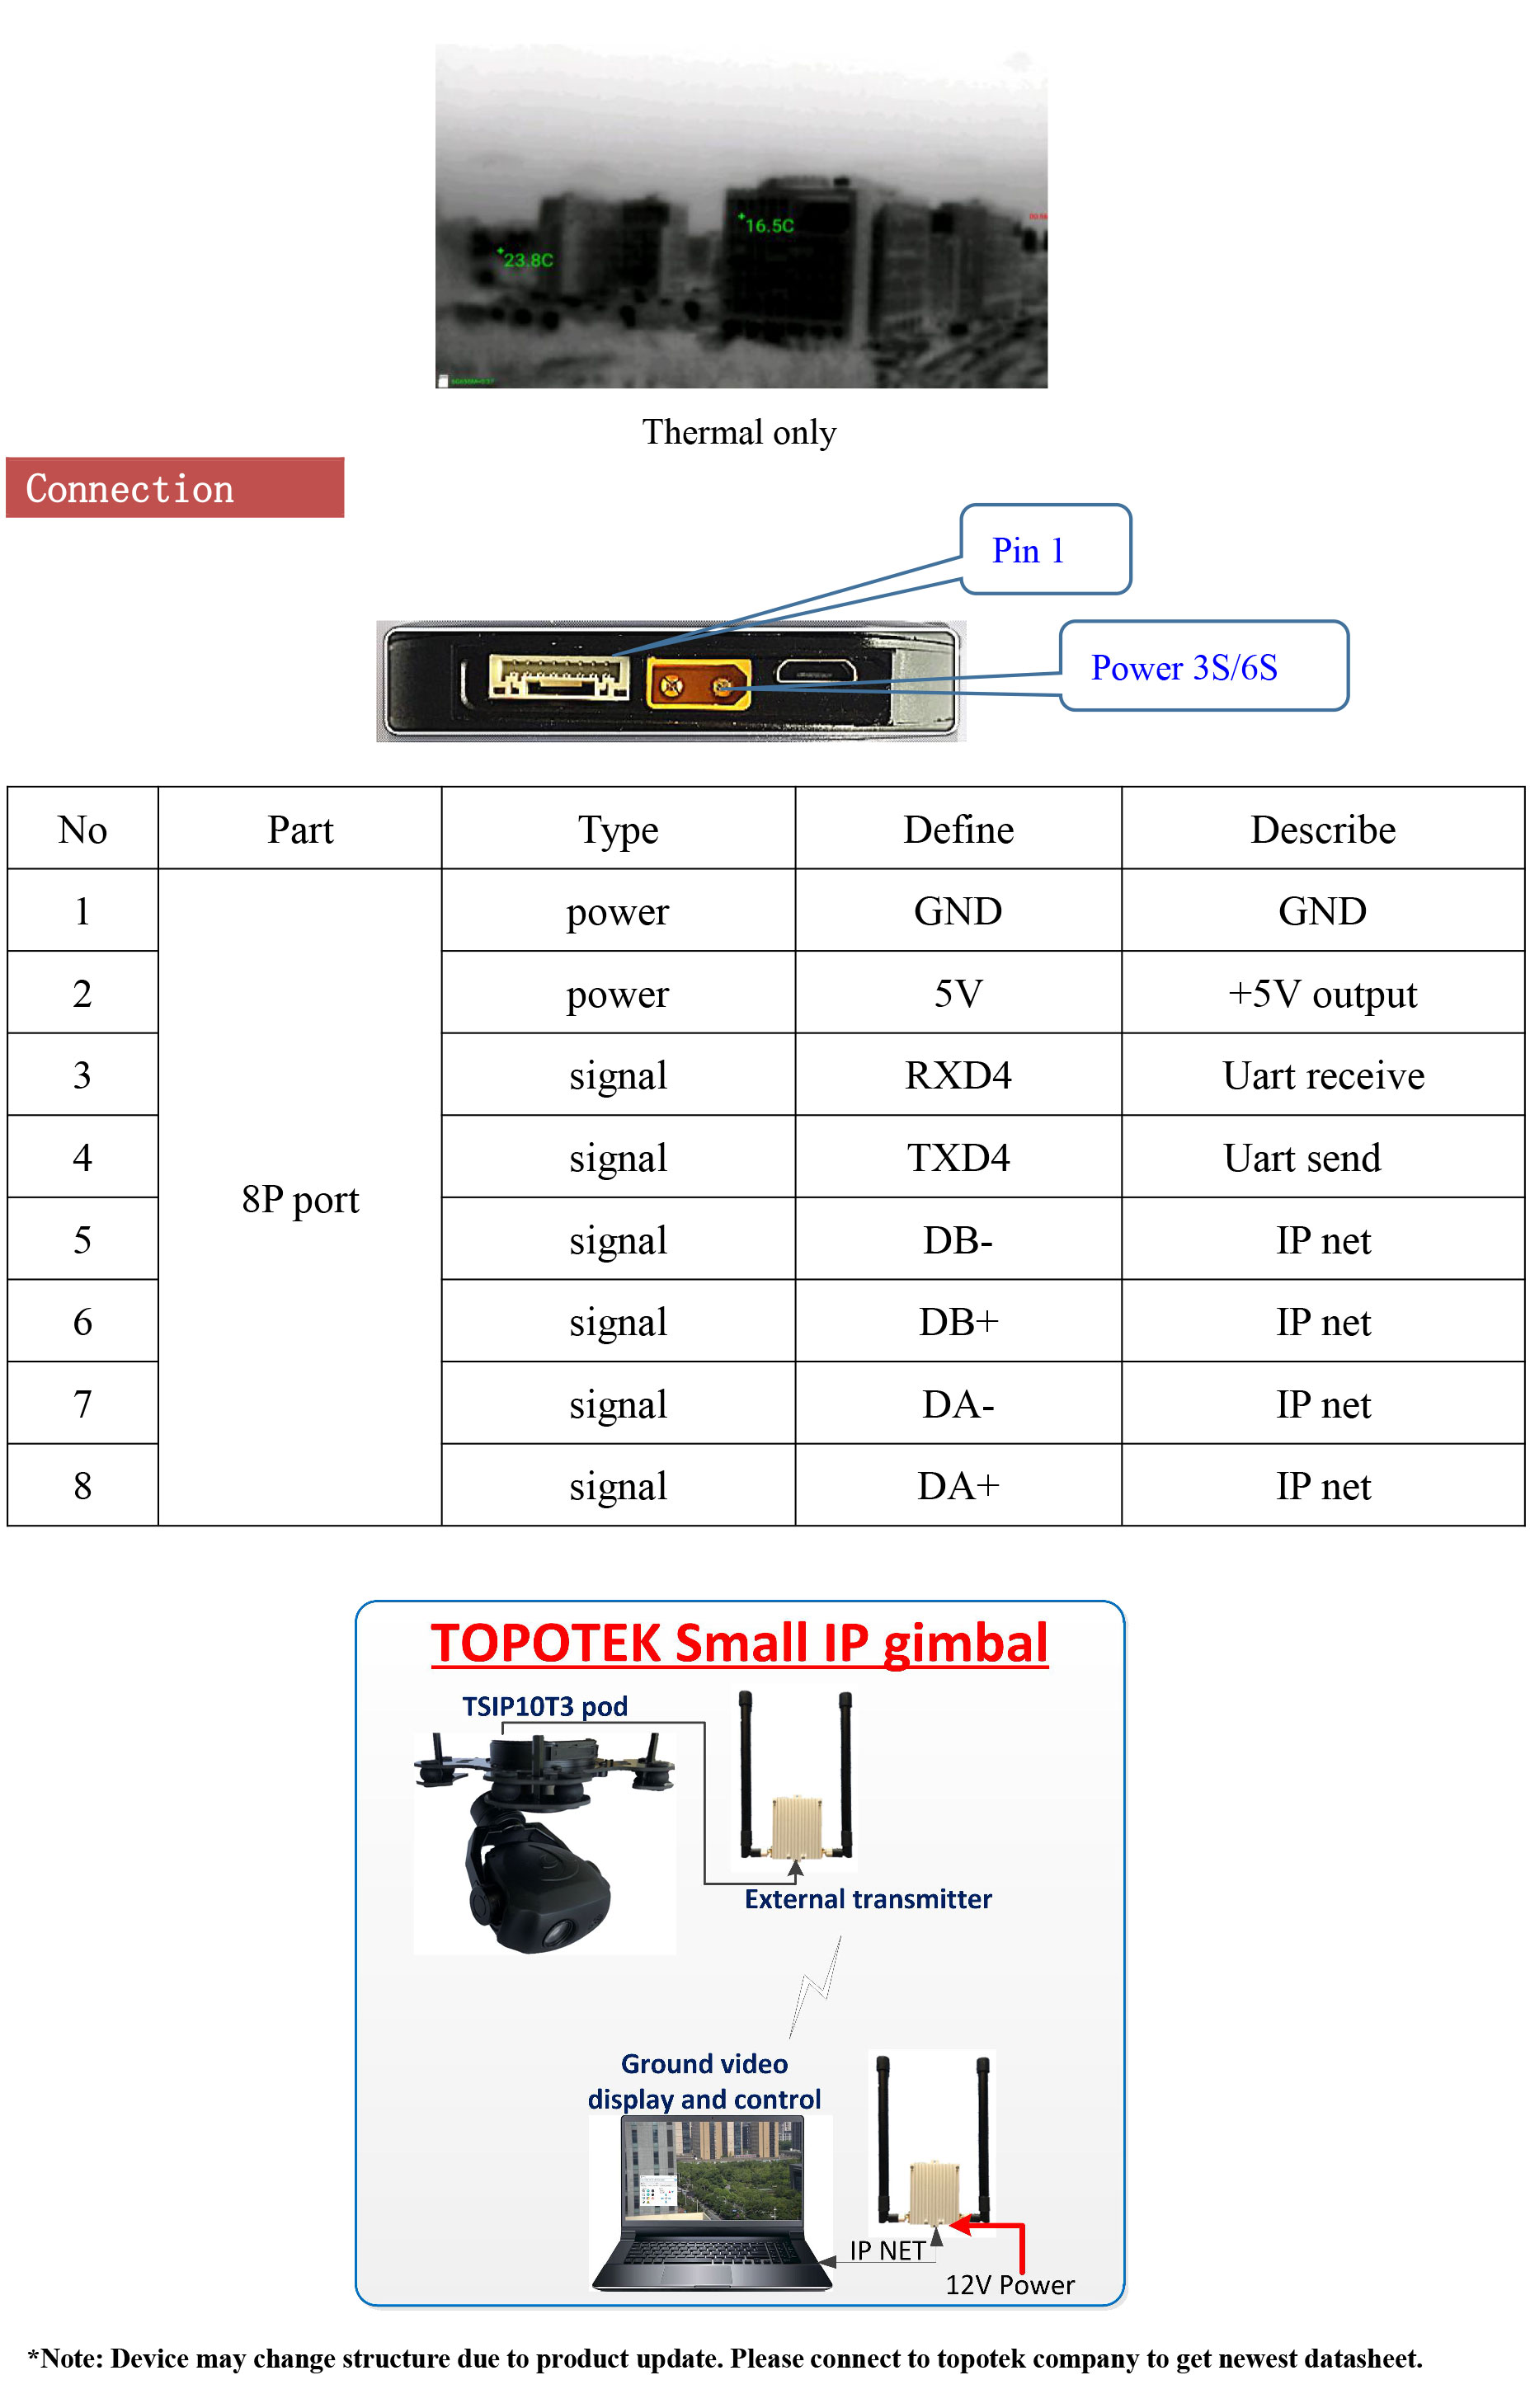 TSIP10T3 10x Optical Zoom Camera +Thermal camera Gimbal（old）